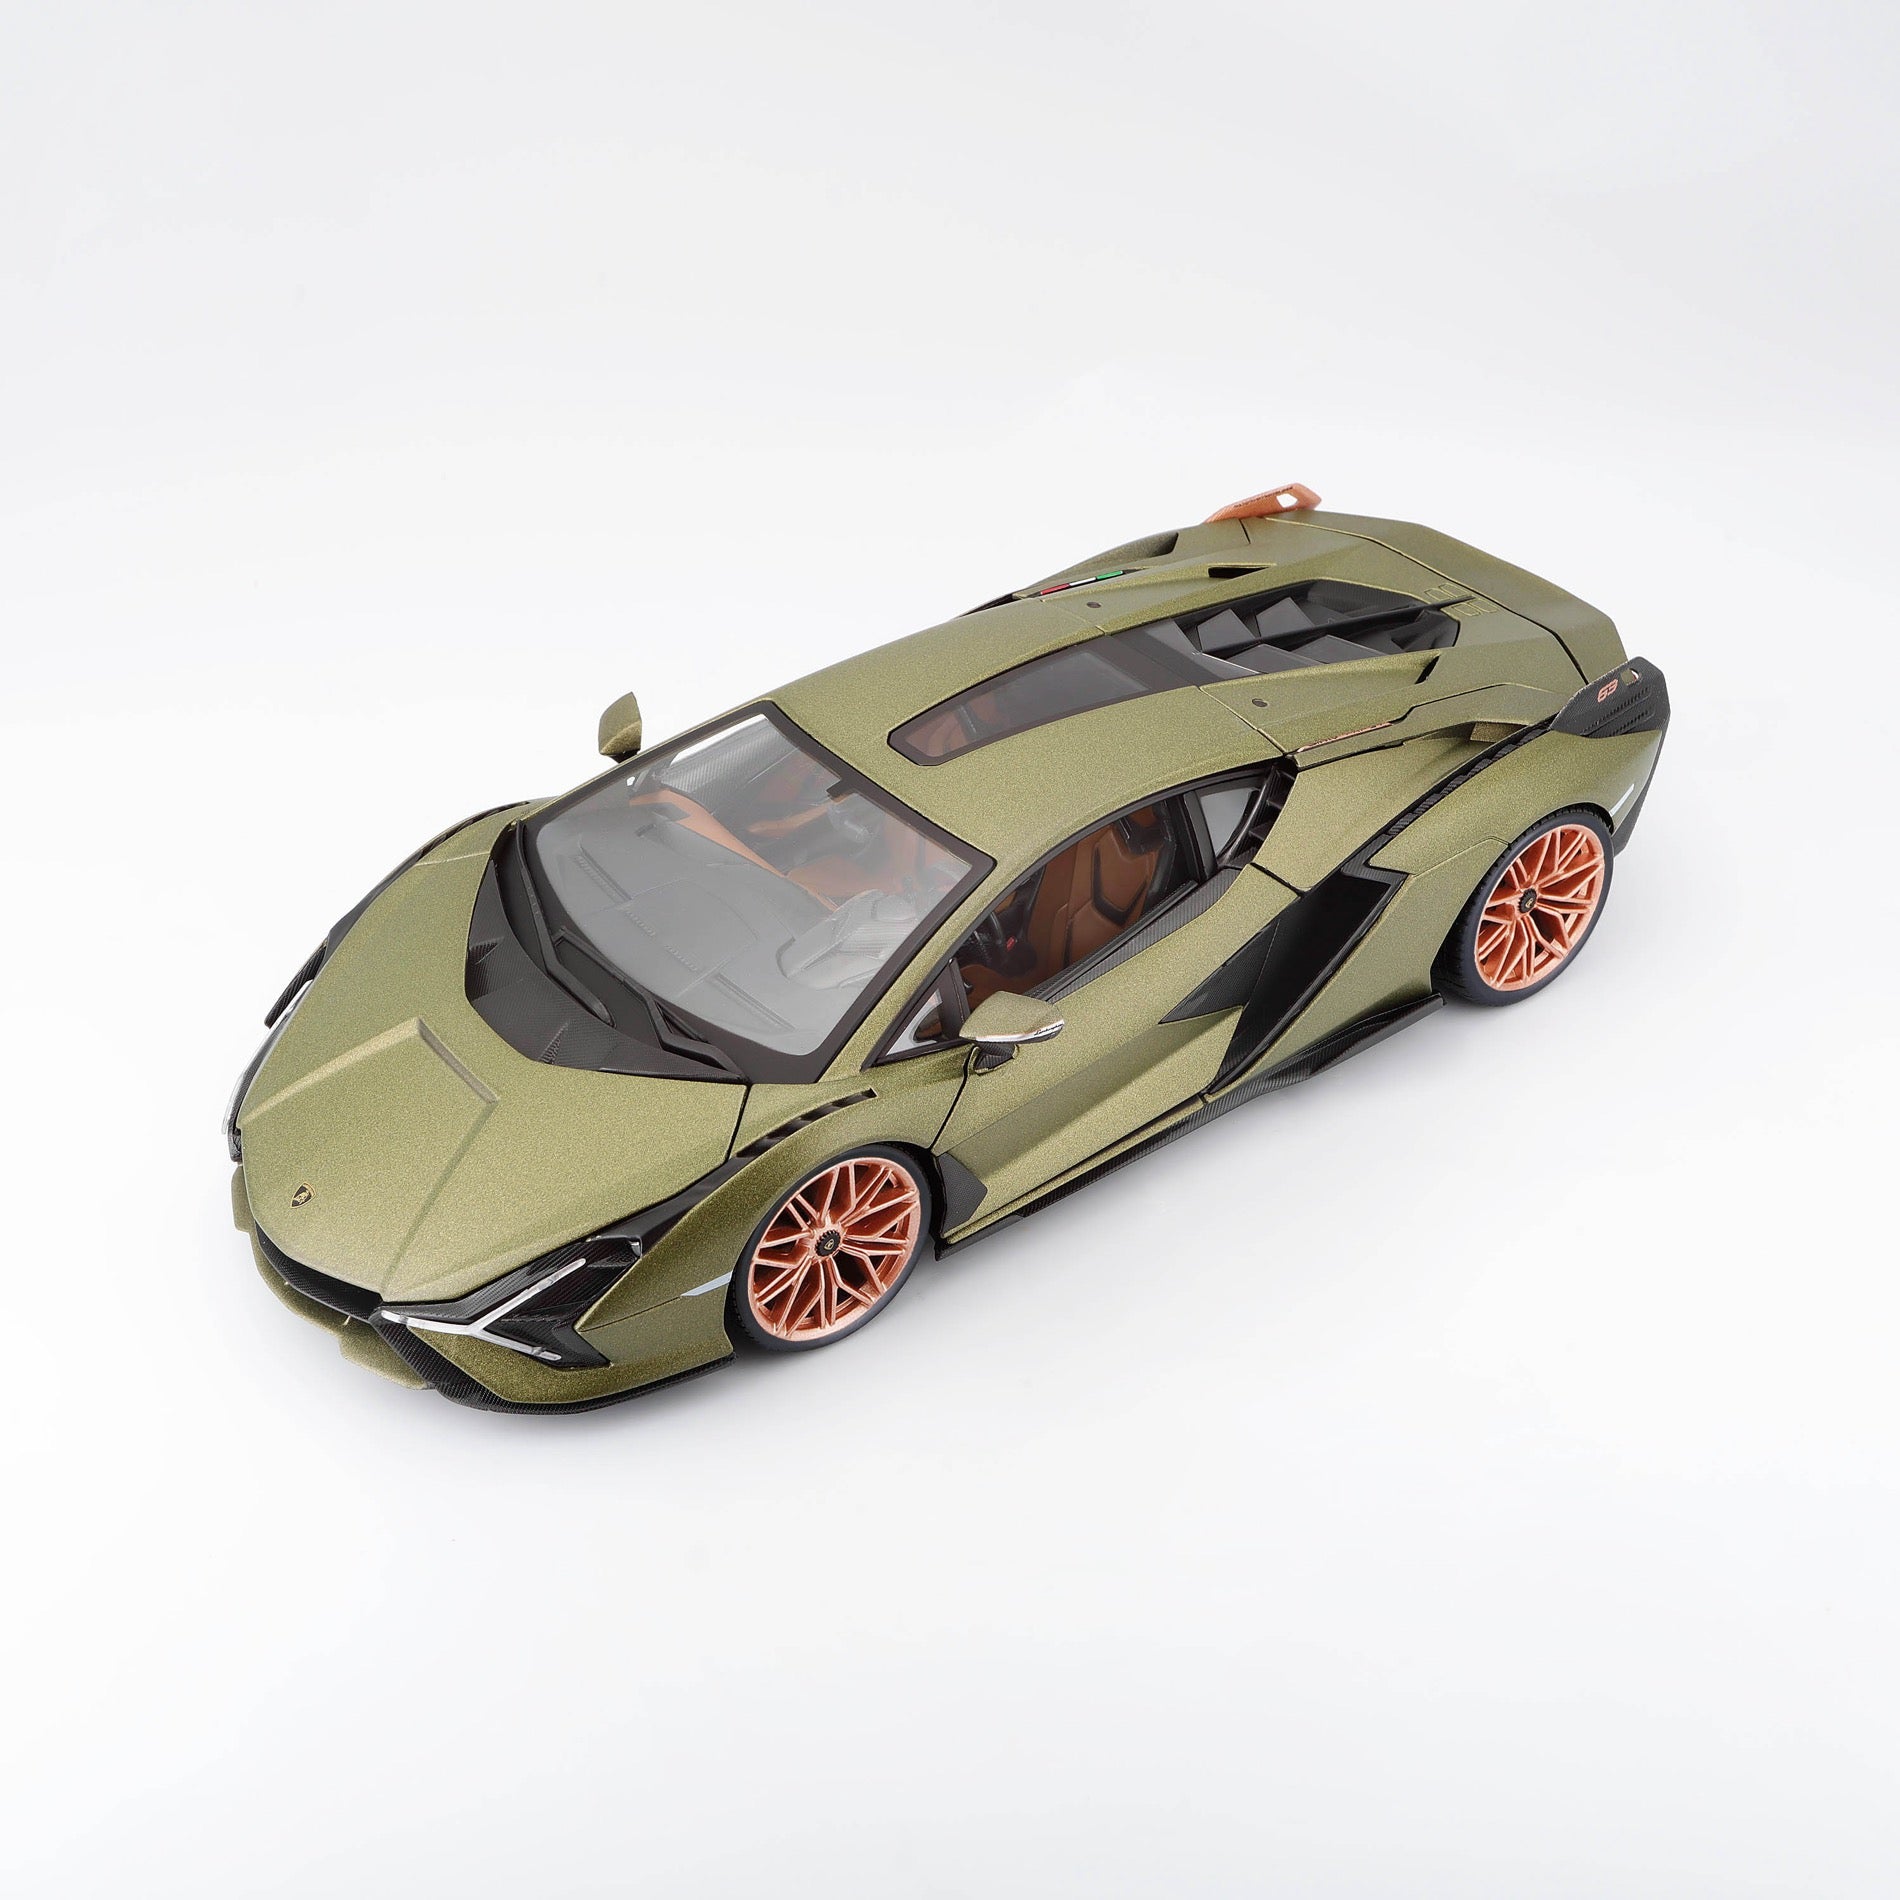 18-11046 Bburago - Lamborghini Sin FKP 37 Verde metalizzato - 1:18